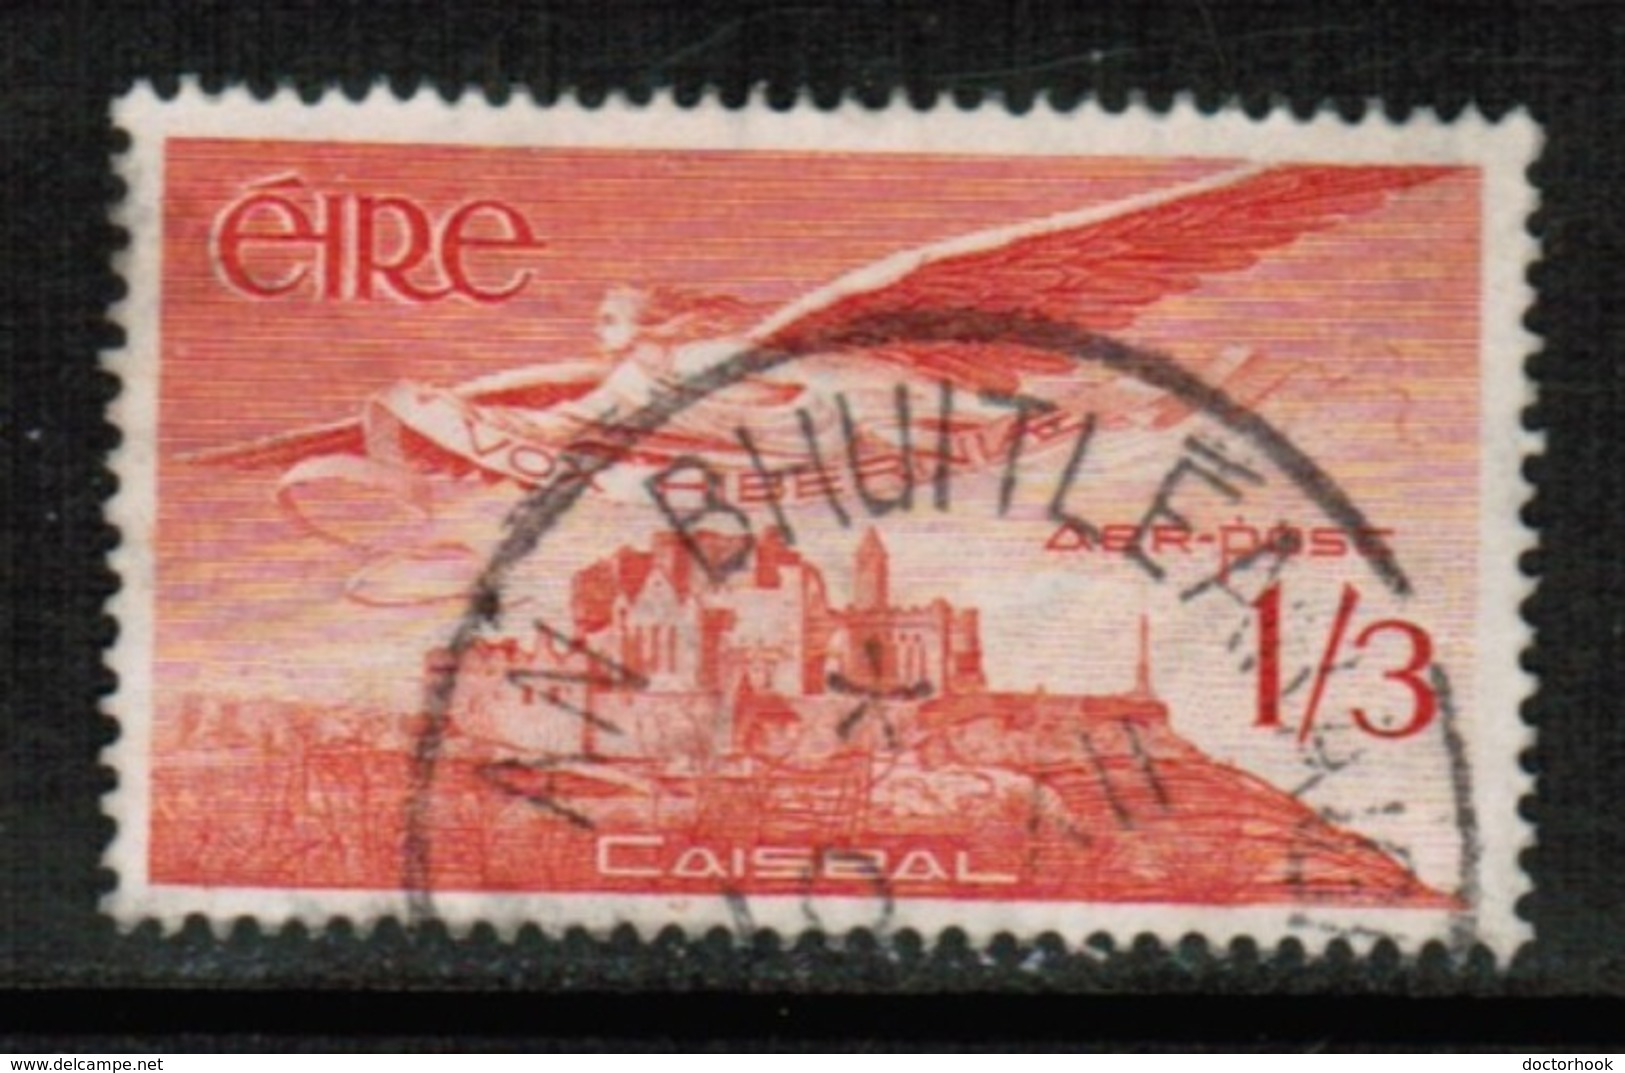 IRELAND  Scott # C 6 VF USED (Stamp Scan # 513) - Luftpost